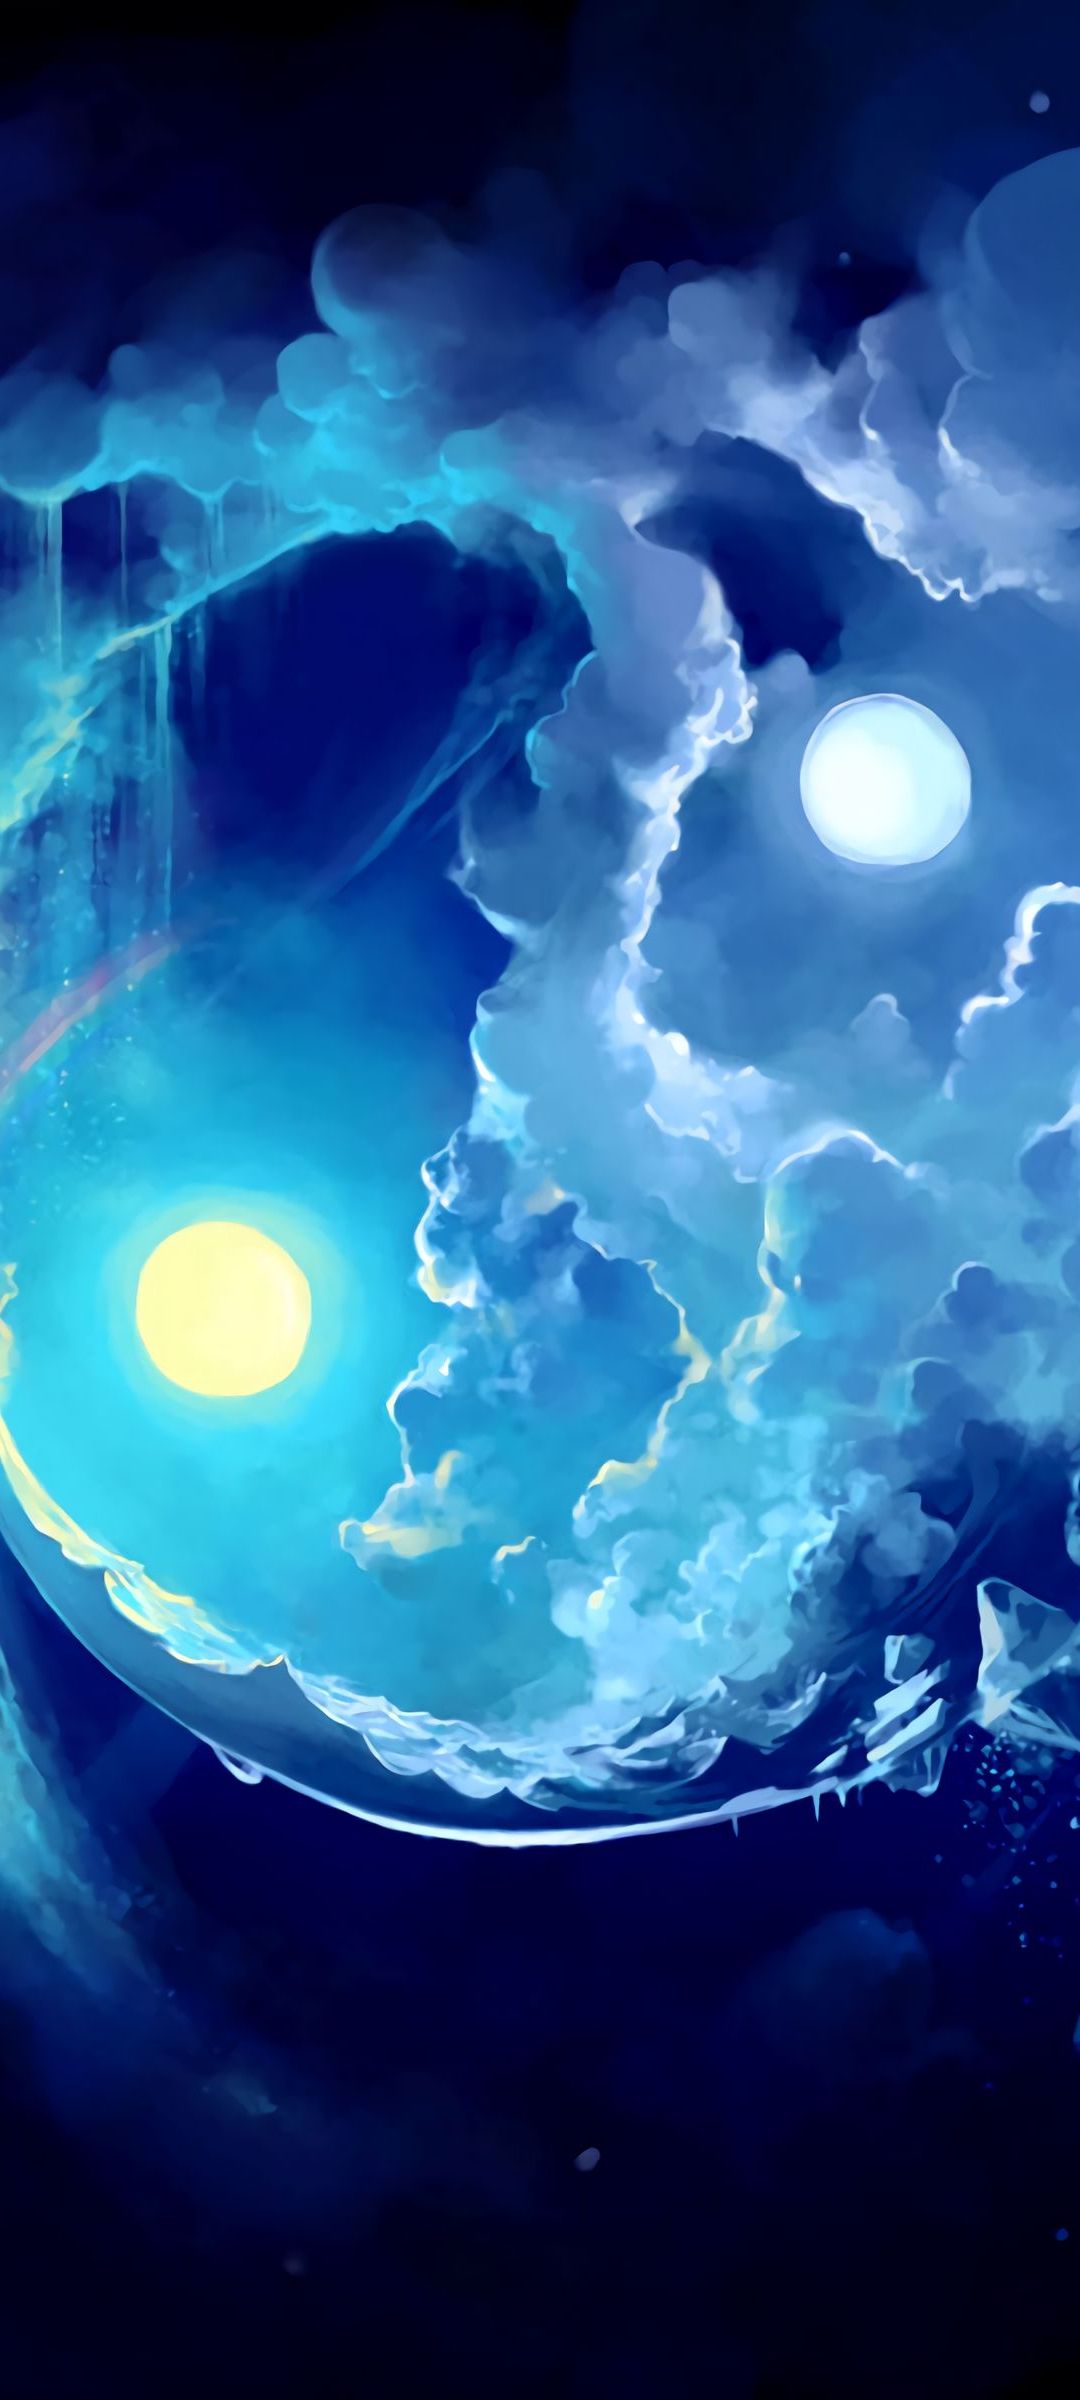 黄色の月と青い空と煙のような雲 Galaxy S21 5g Androidスマホ壁紙 待ち受け スマラン